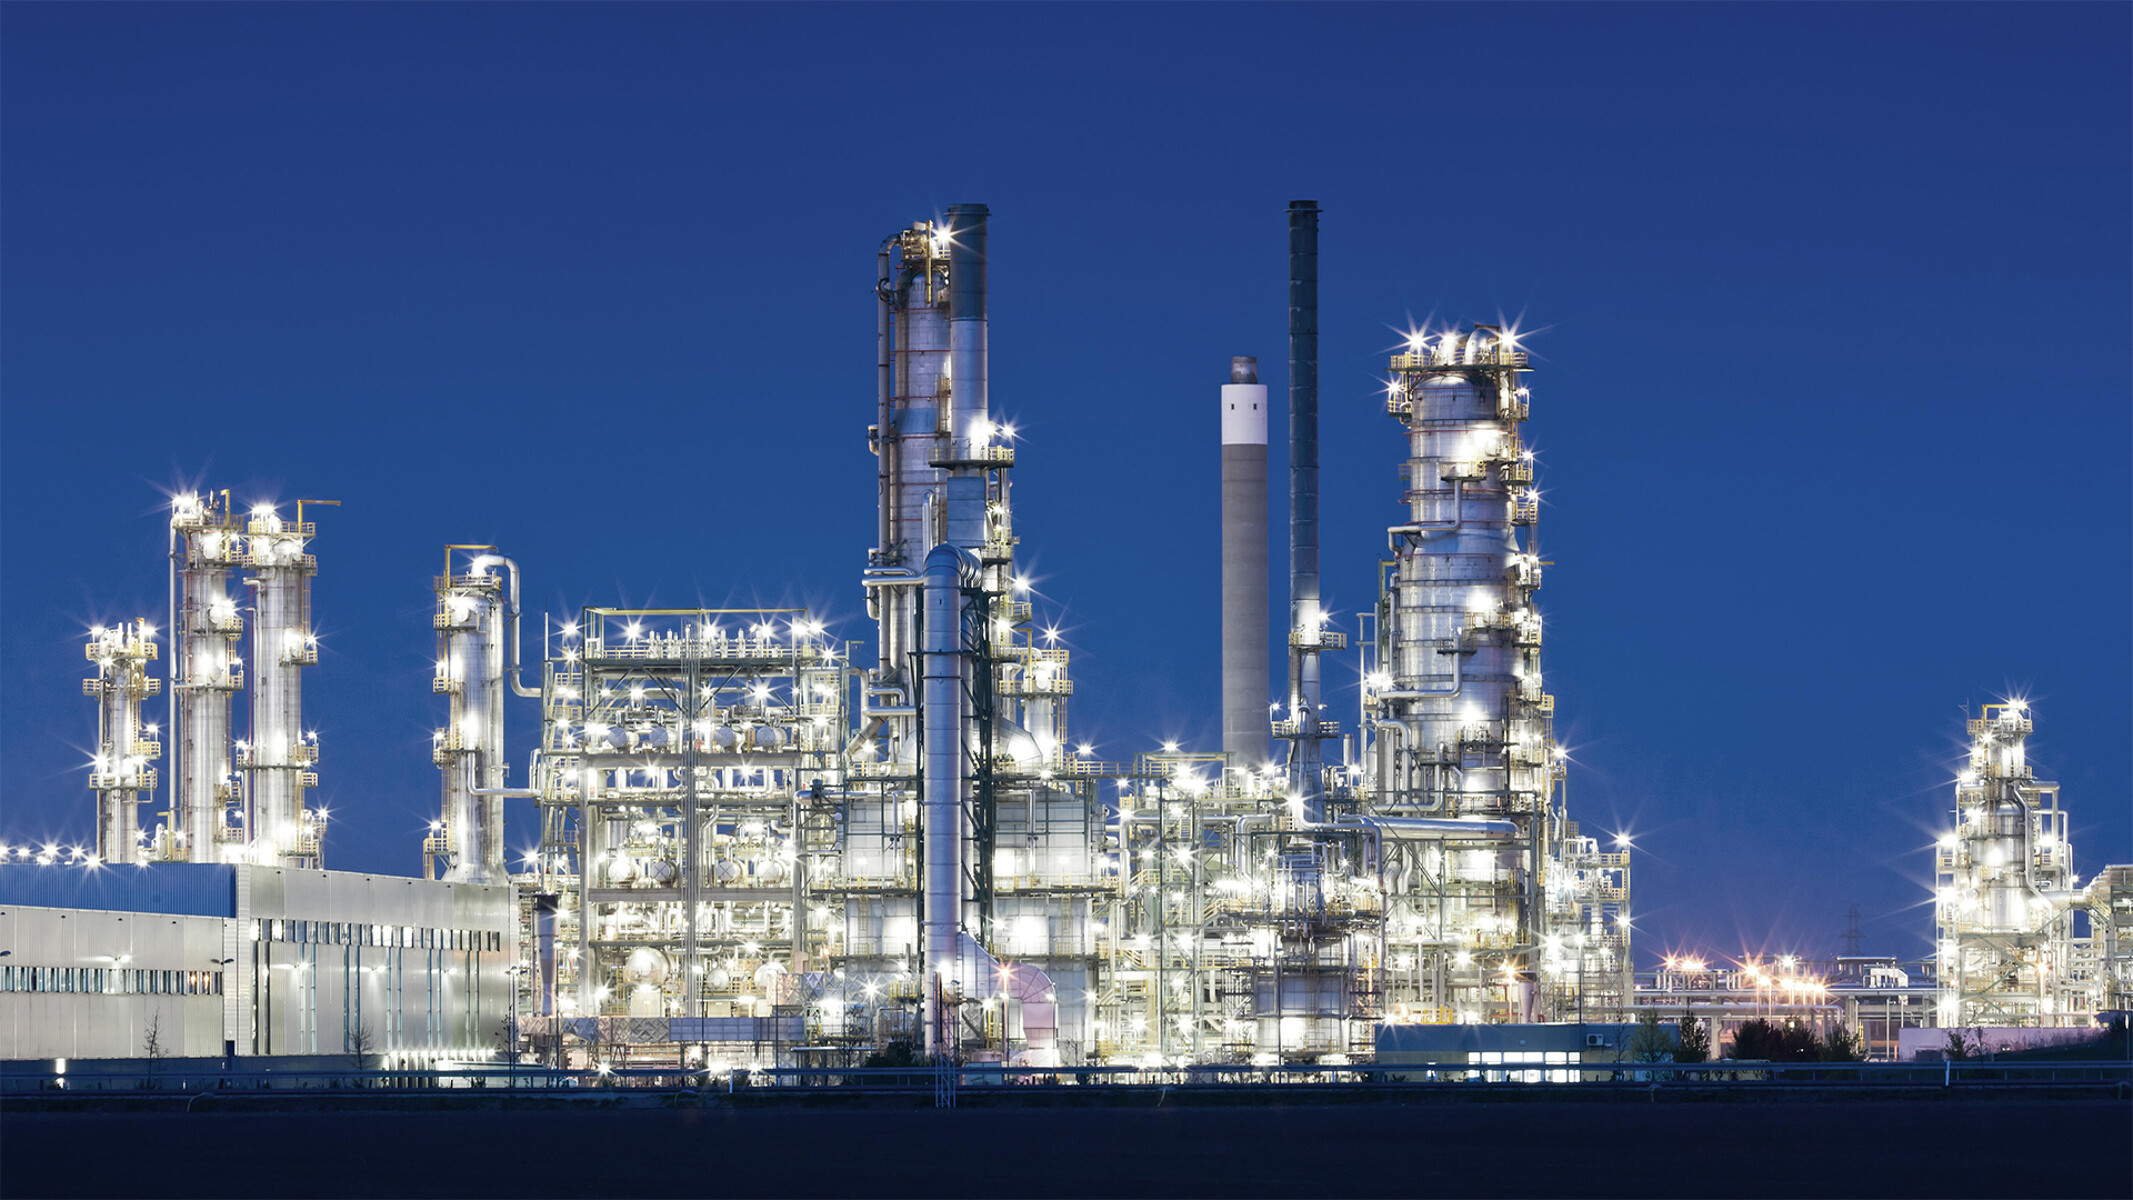 Visokokvalitetni proizvodi za primene u industriji nafte i gasa